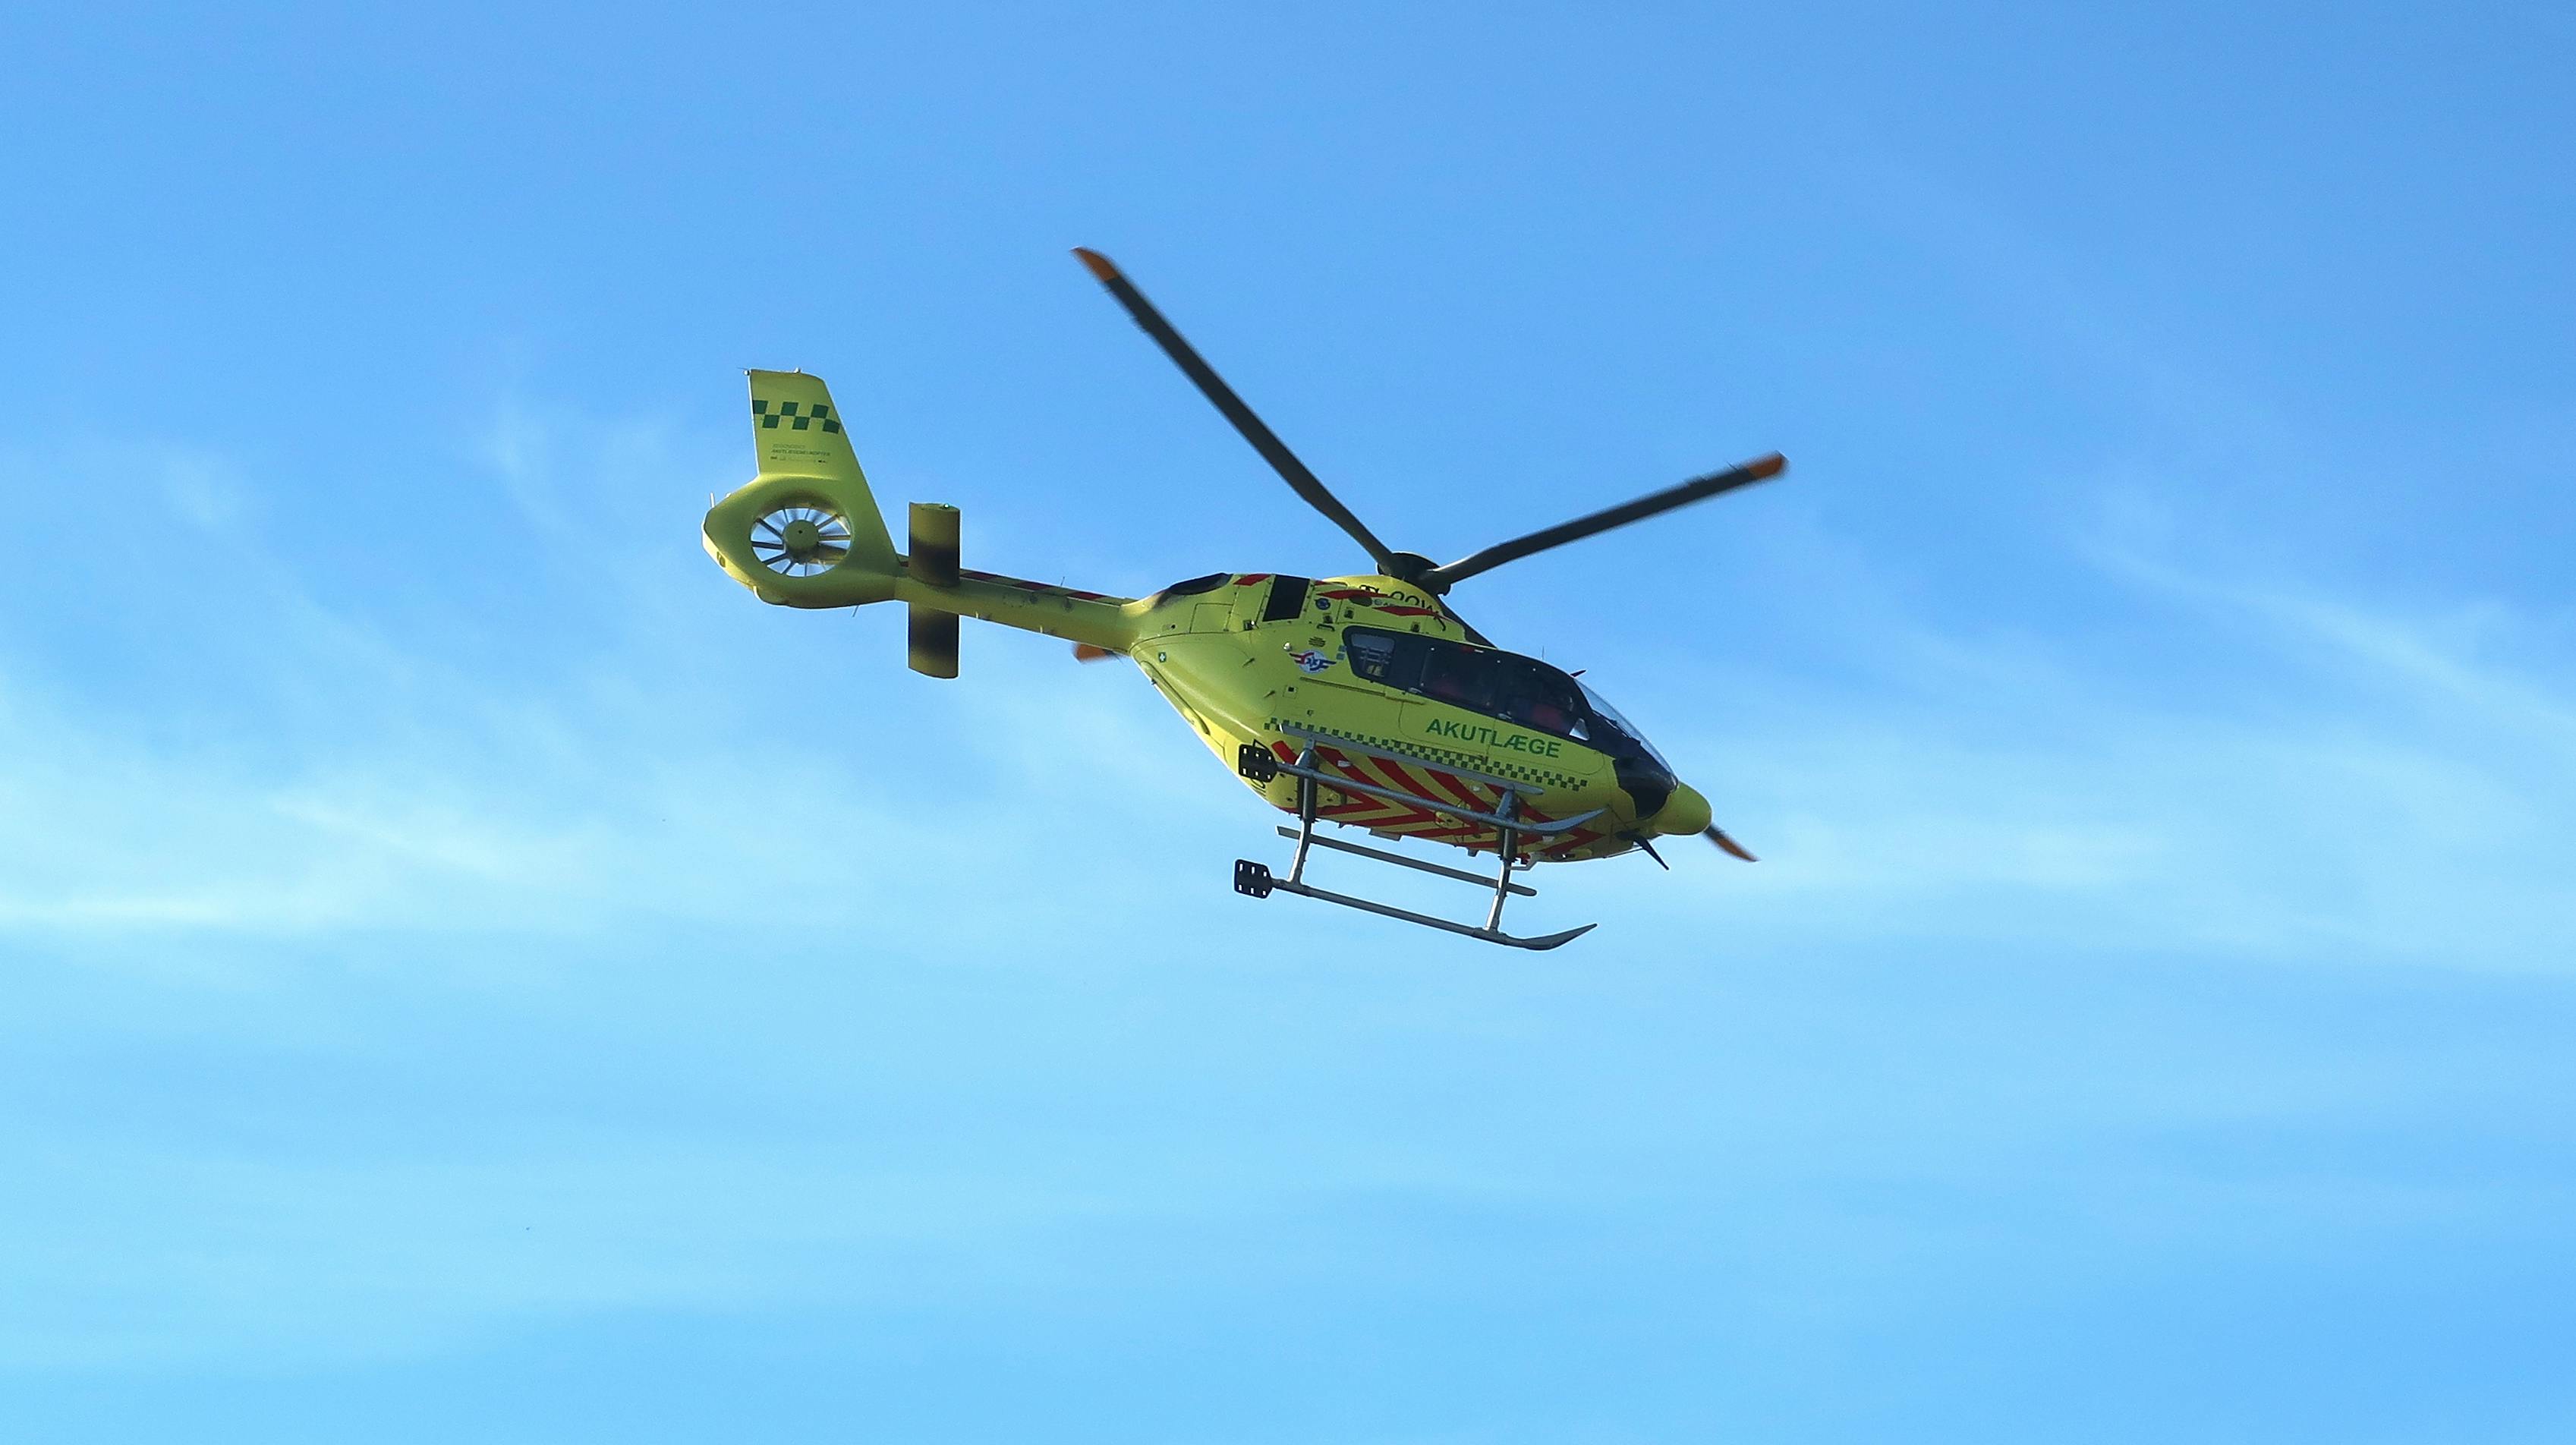 Lægehelikopter letter fra Hvalpsund med patient, ambulancehelikopter letter mod Aalborg Hospital, 